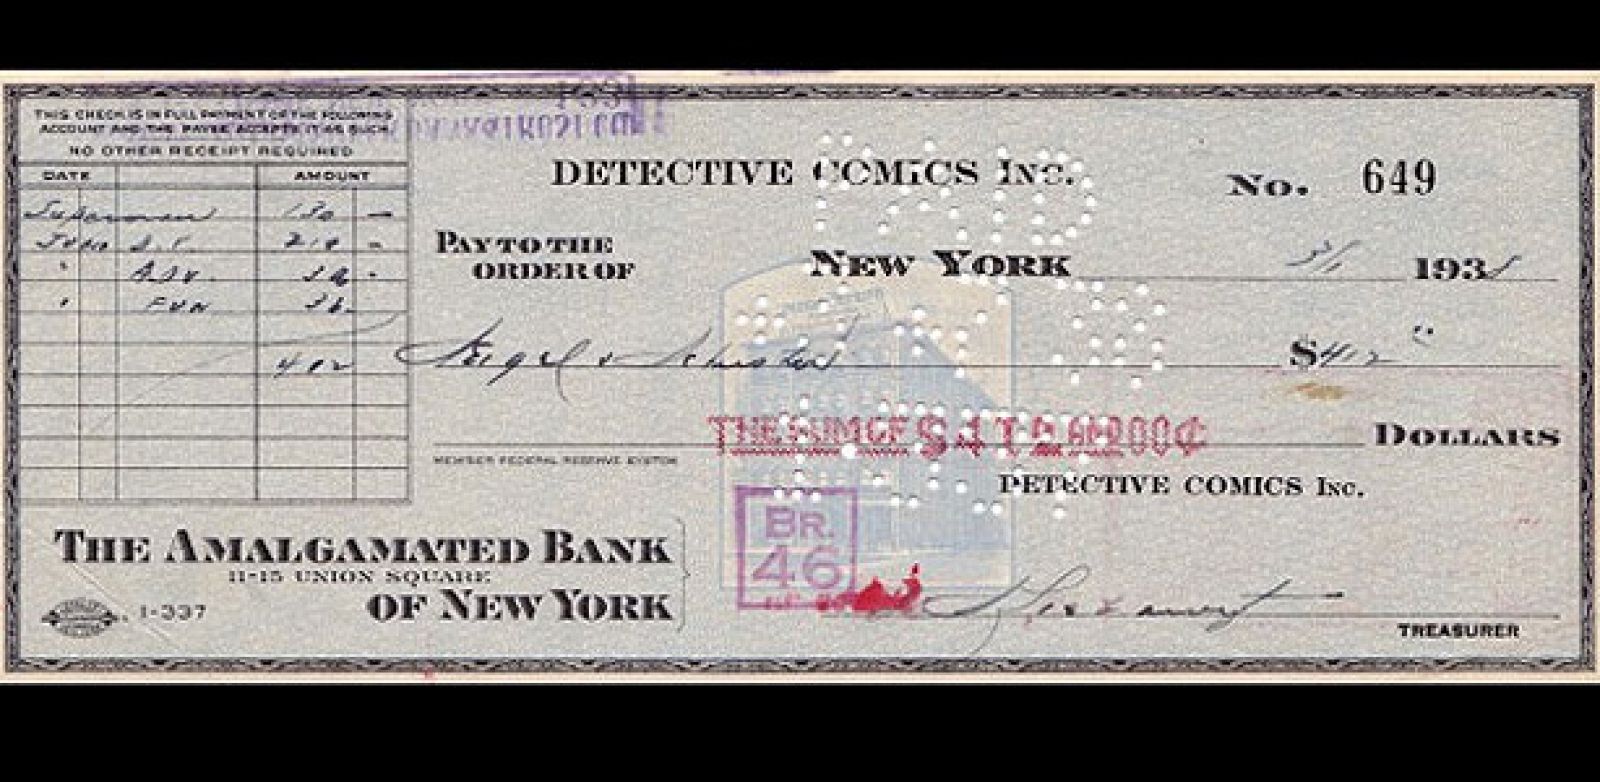 El cheque de 130 dólares con el que se compró a Superman